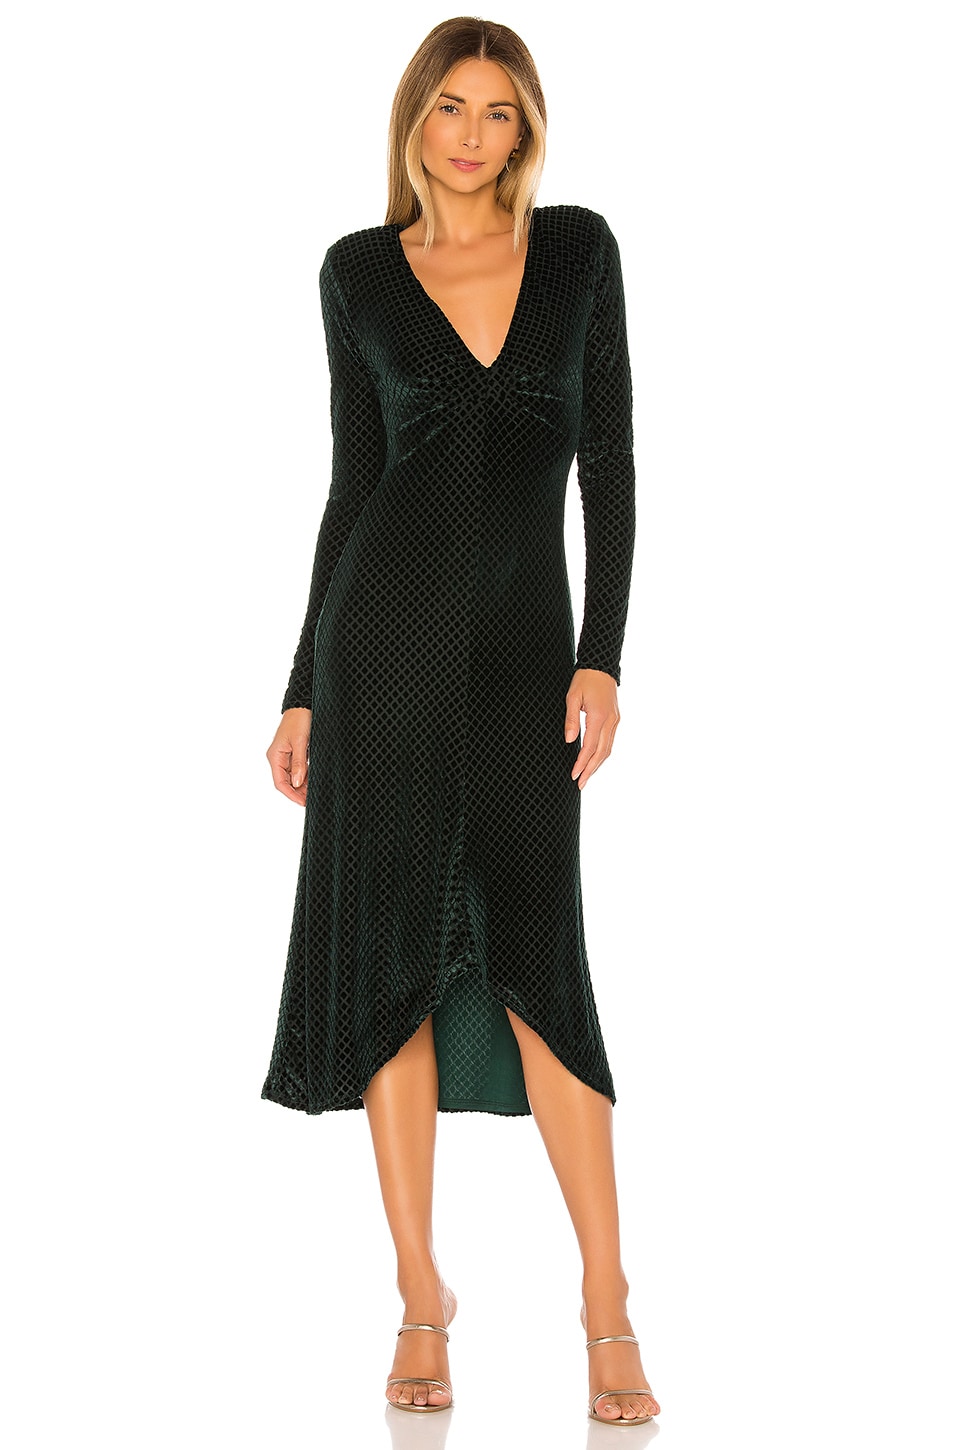 House of Harlow 1960 x REVOLVE Odetta Midi Dress in Hunter Green | REVOLVE